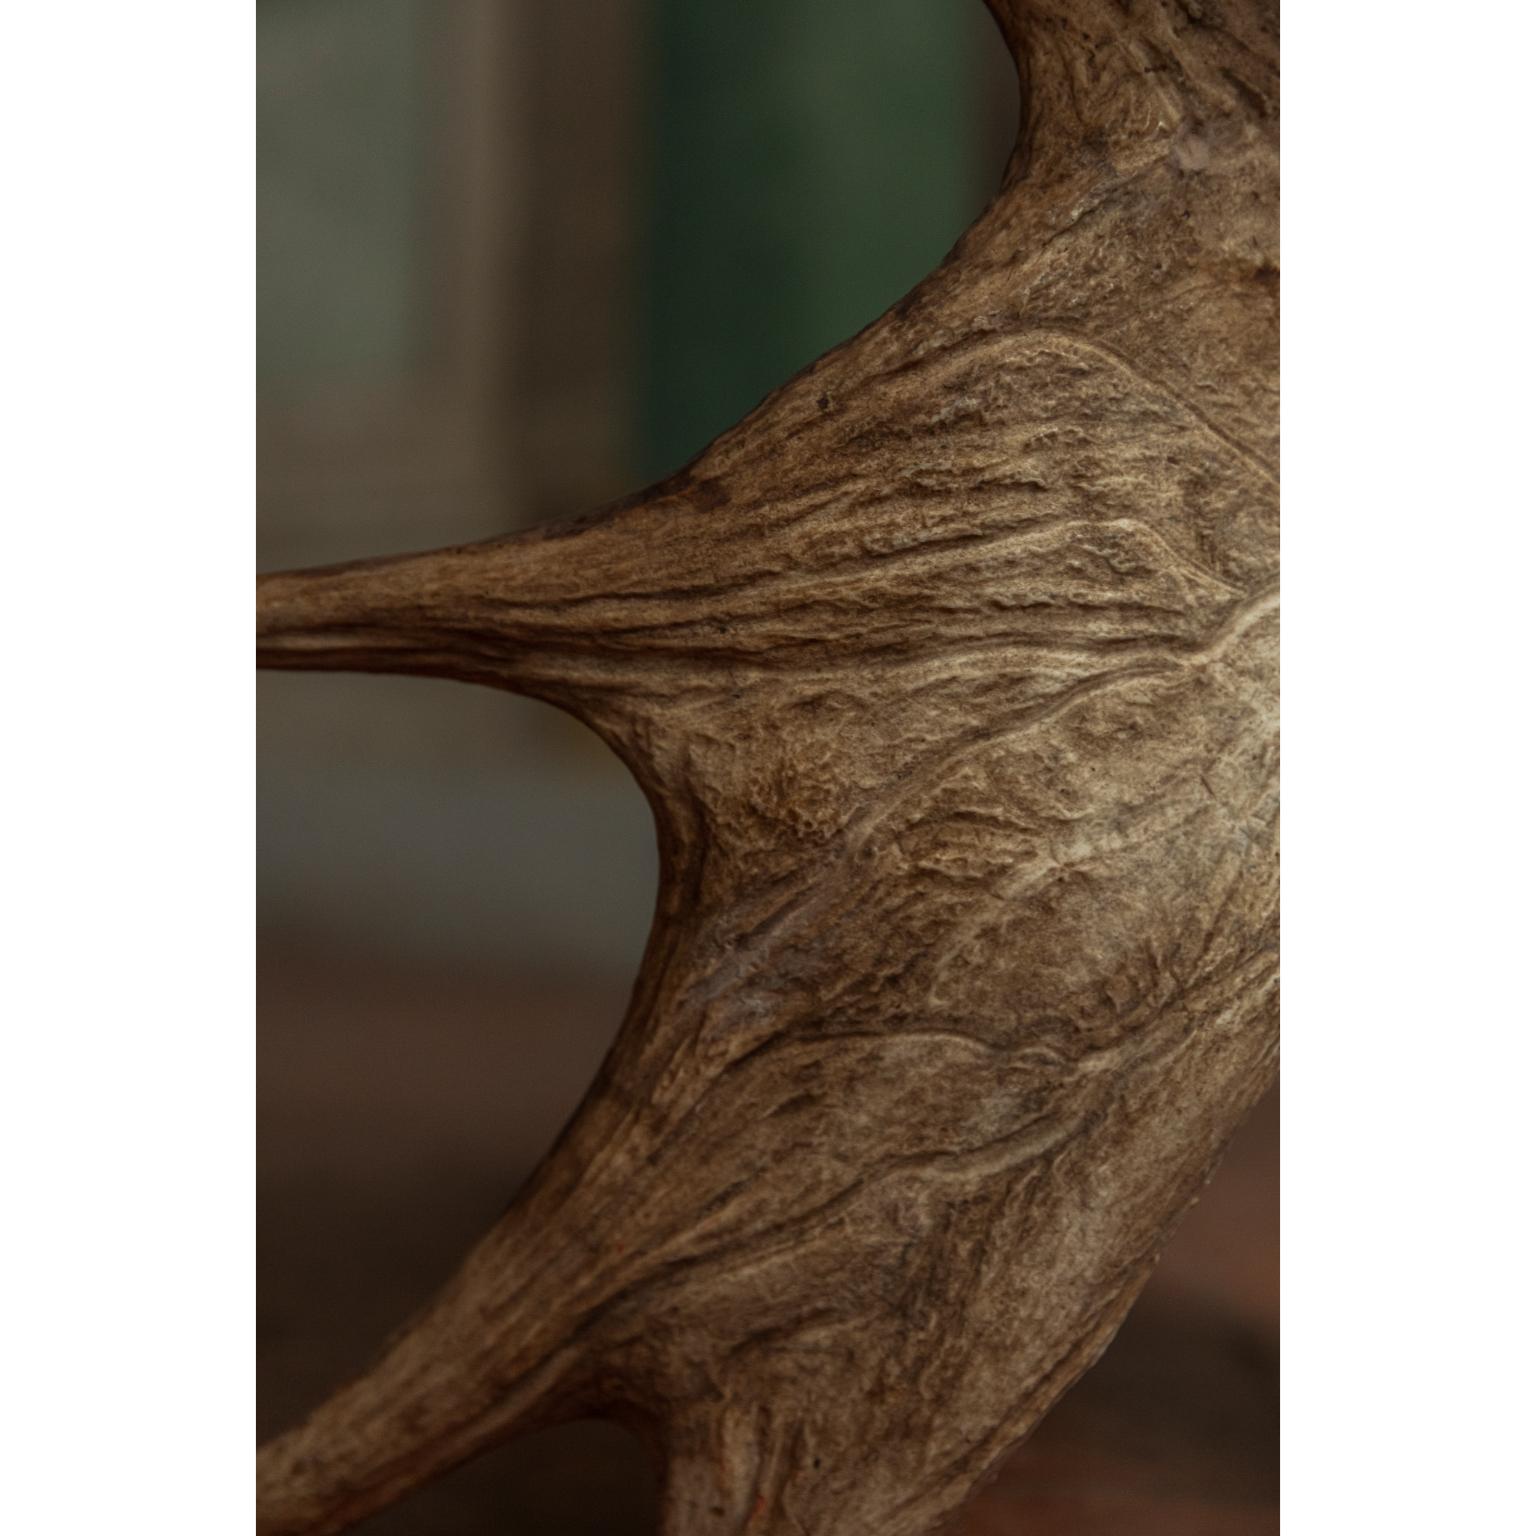 Stag T par Rick Owens
Dimensions : L 55 x l 30 x H 44 cm
Matériaux : Contreplaqué (naturel), bois d'orignal.
Poids : 7.3 kg
Chaque pièce est unique et peut différer comme l'élan en bois de cerf est unique.

Rick Owens est un créateur de mode